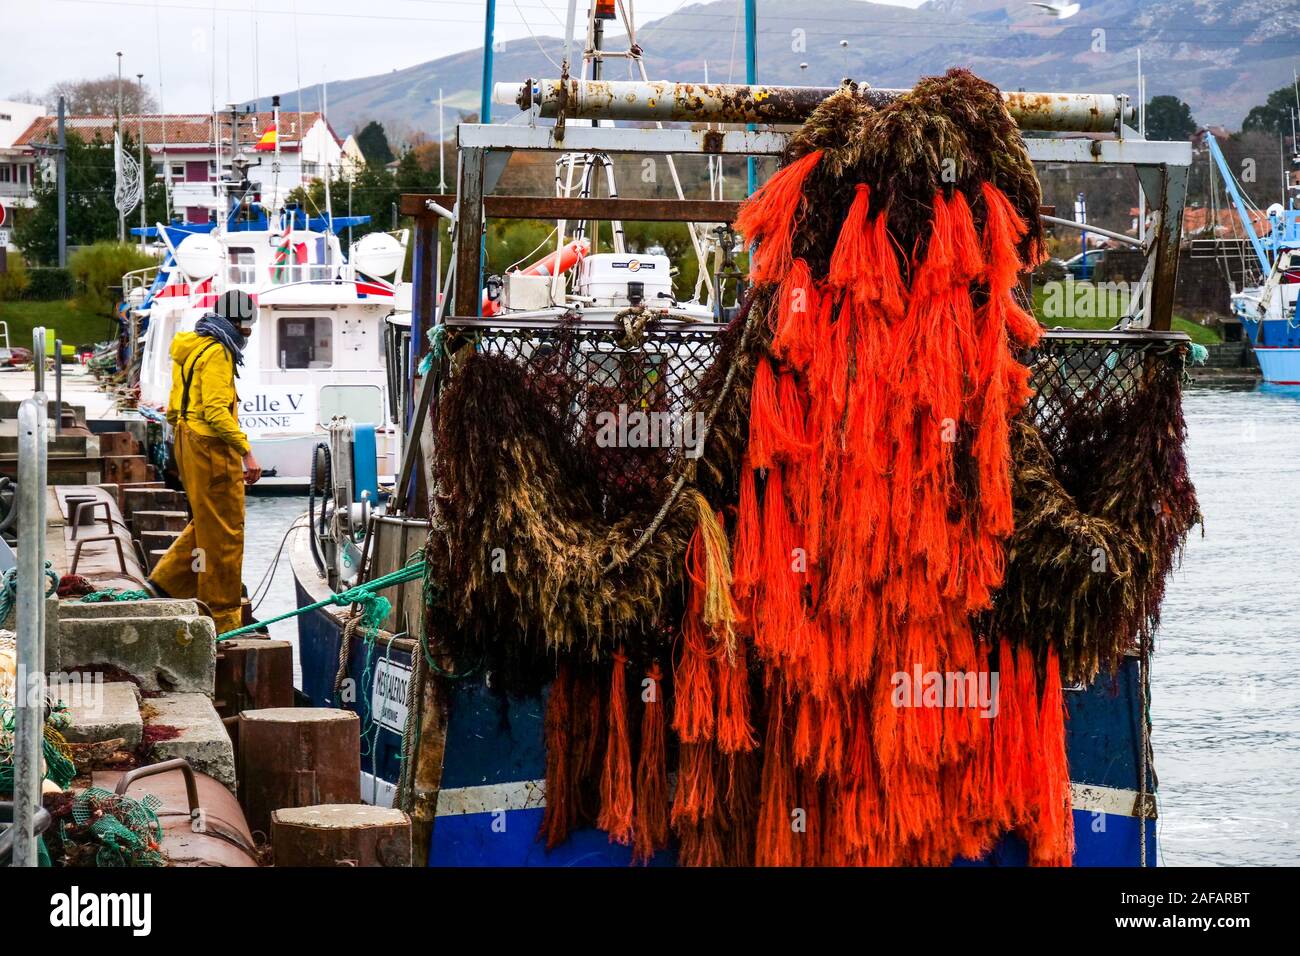 La descarga de algas rojas, puerto pesquero de Saint-Jean de Luz, Pirineos Atlánticos, Francia Foto de stock